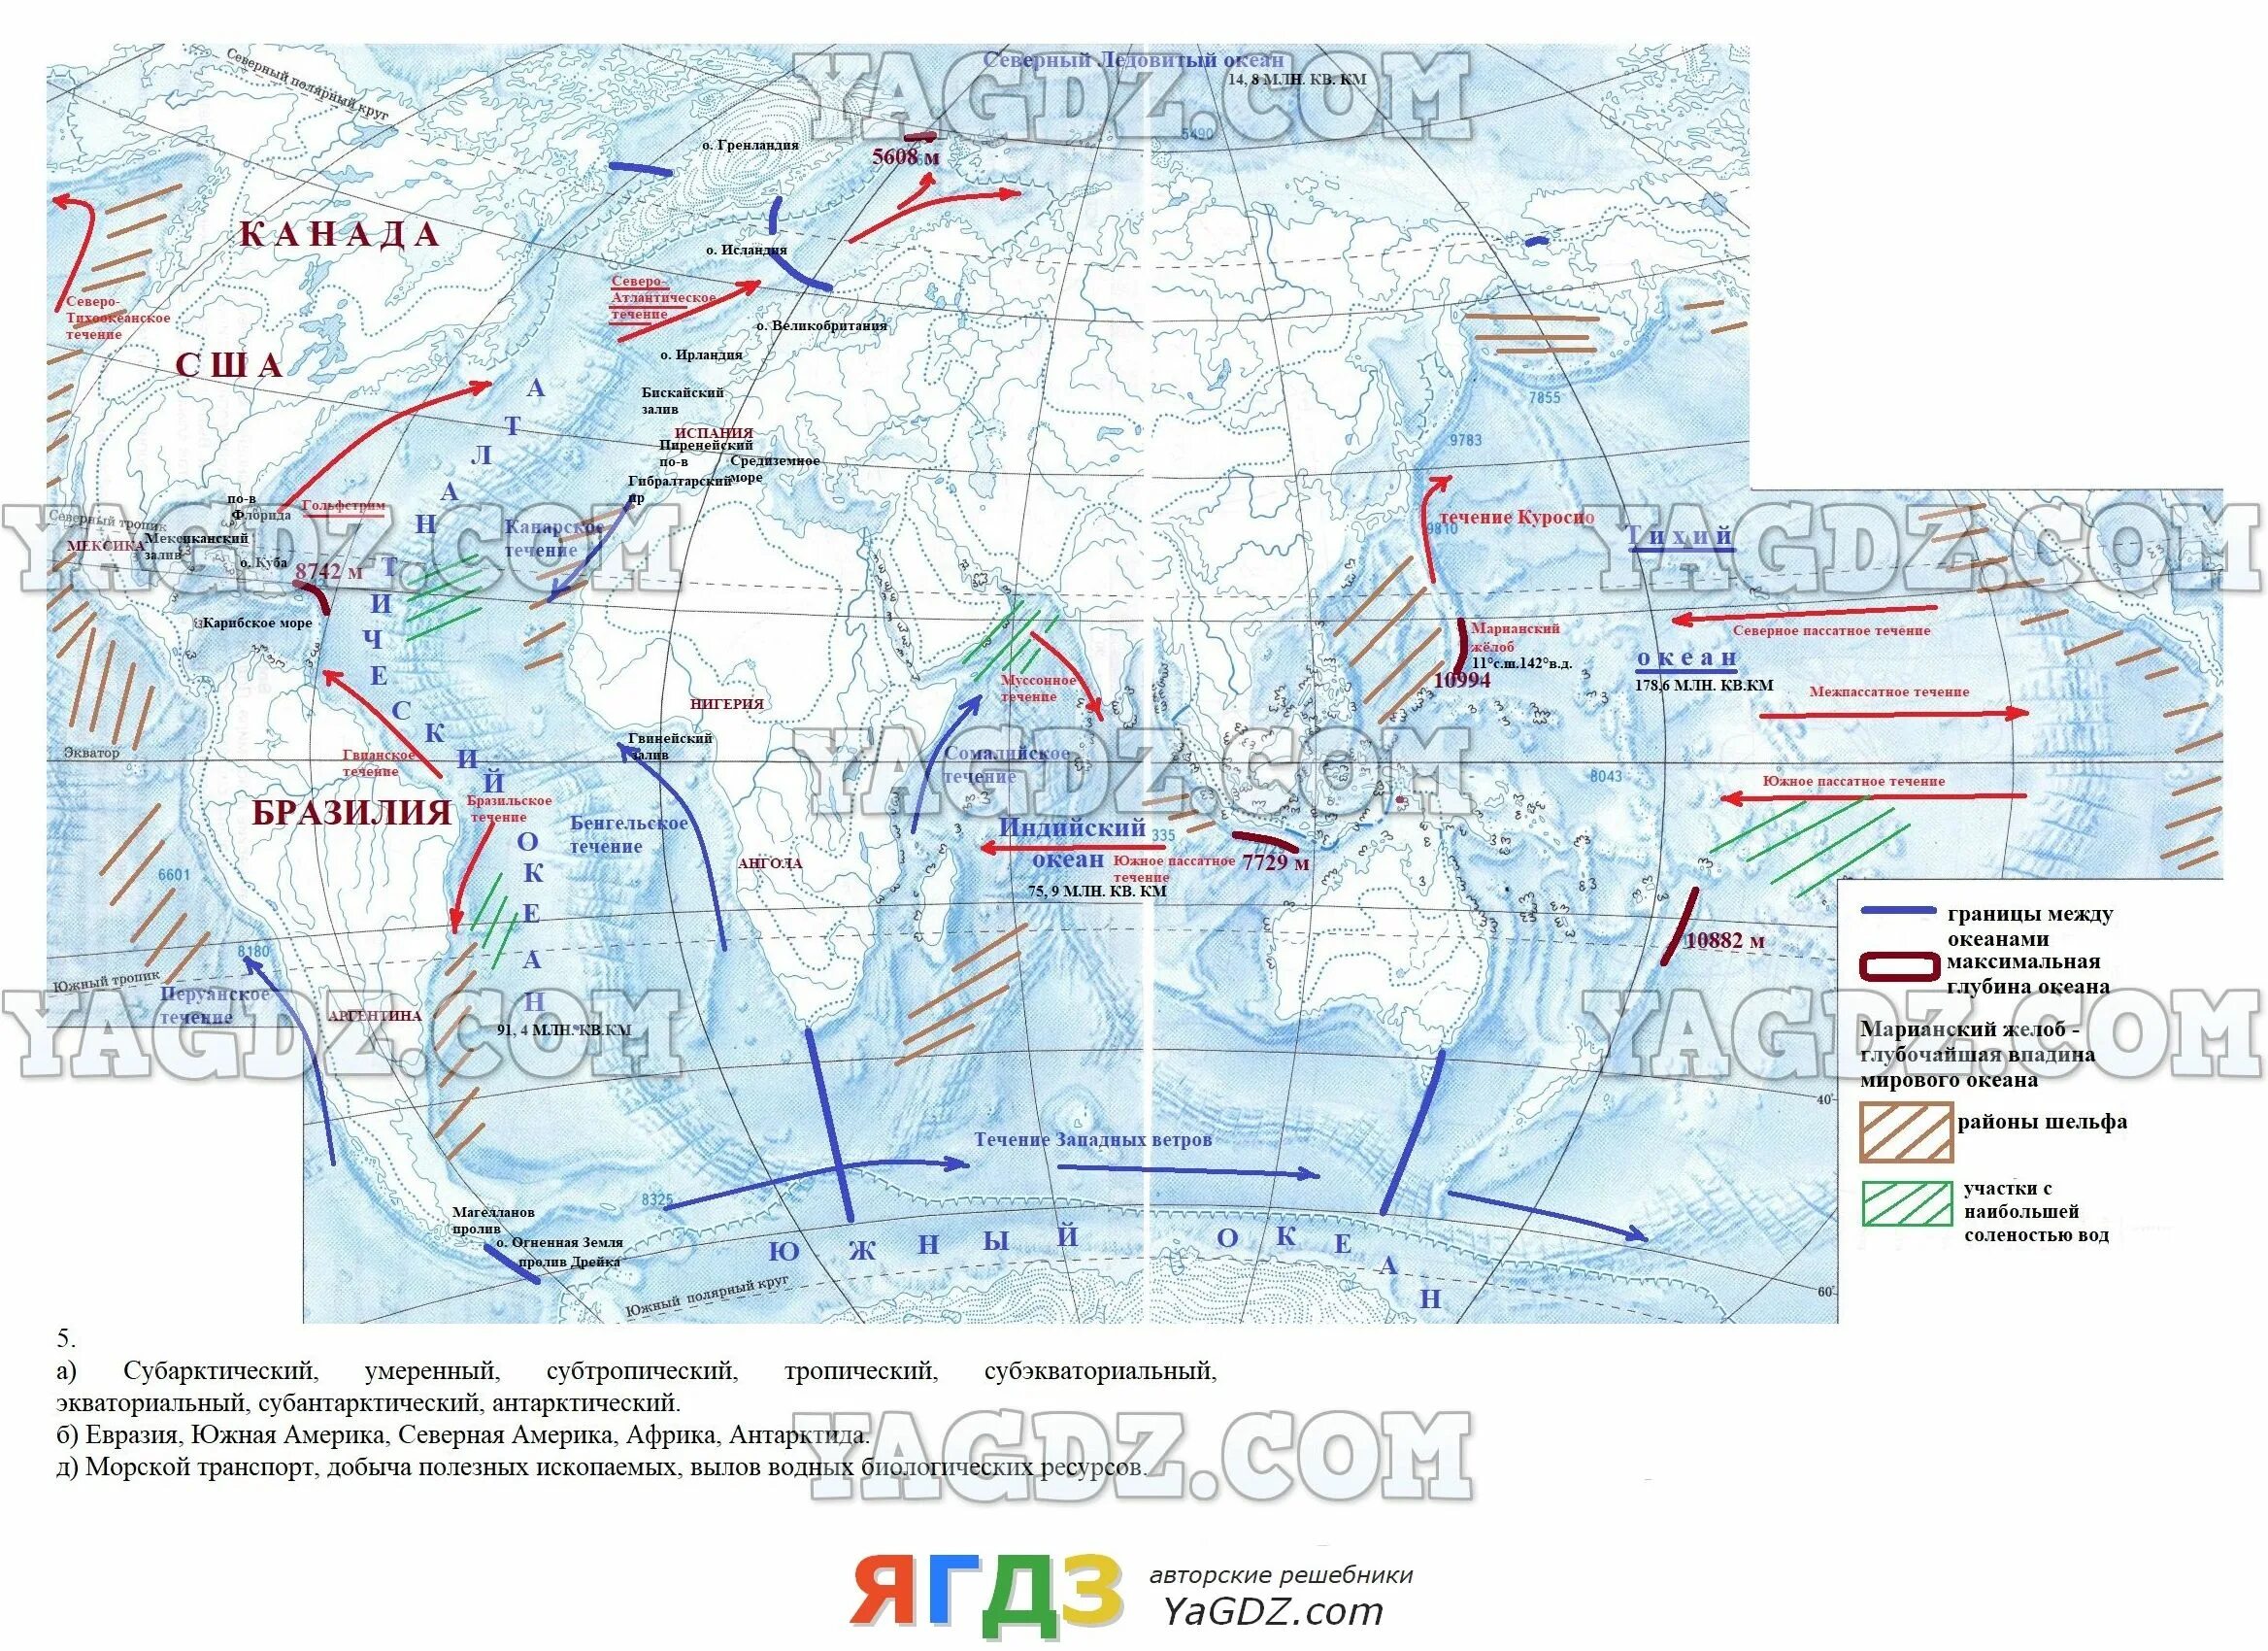 Гдз контурные карты 7 класс Дрофа мировой океан. Карта мирового океана 7 класс контурные карты гдз. Мировой океан 6 класс география контурная карта ответы. Контурные карты 7 класс география Дрофа гдз 2022.